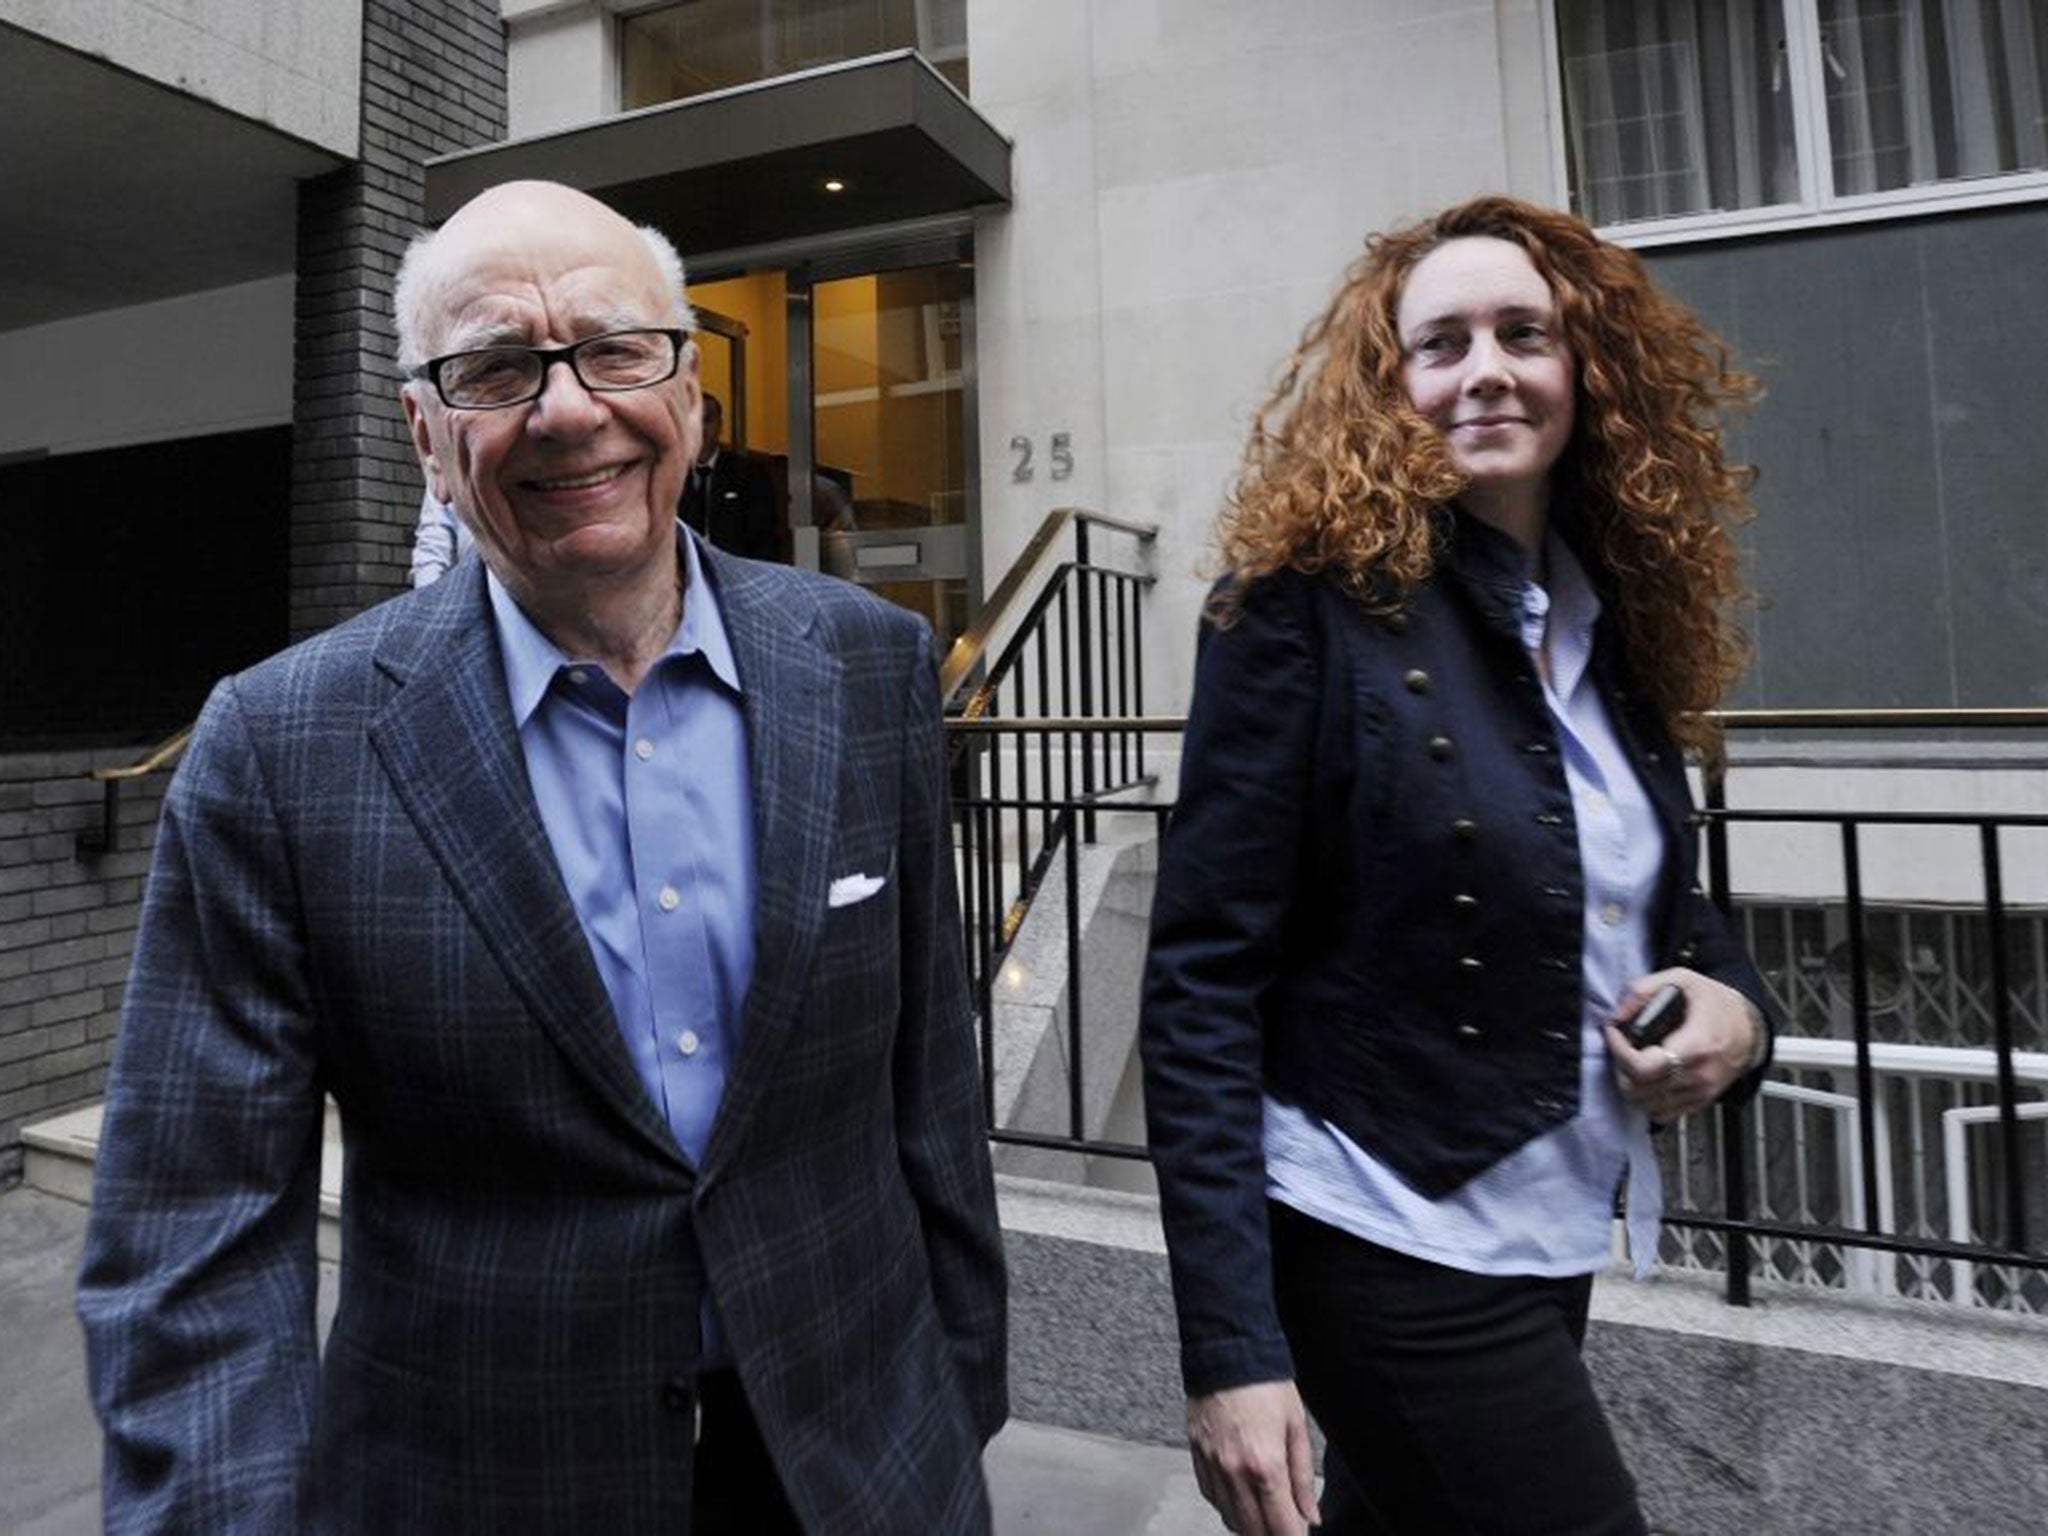 Rupert Murdoch and Rebekah Brooks in 2011